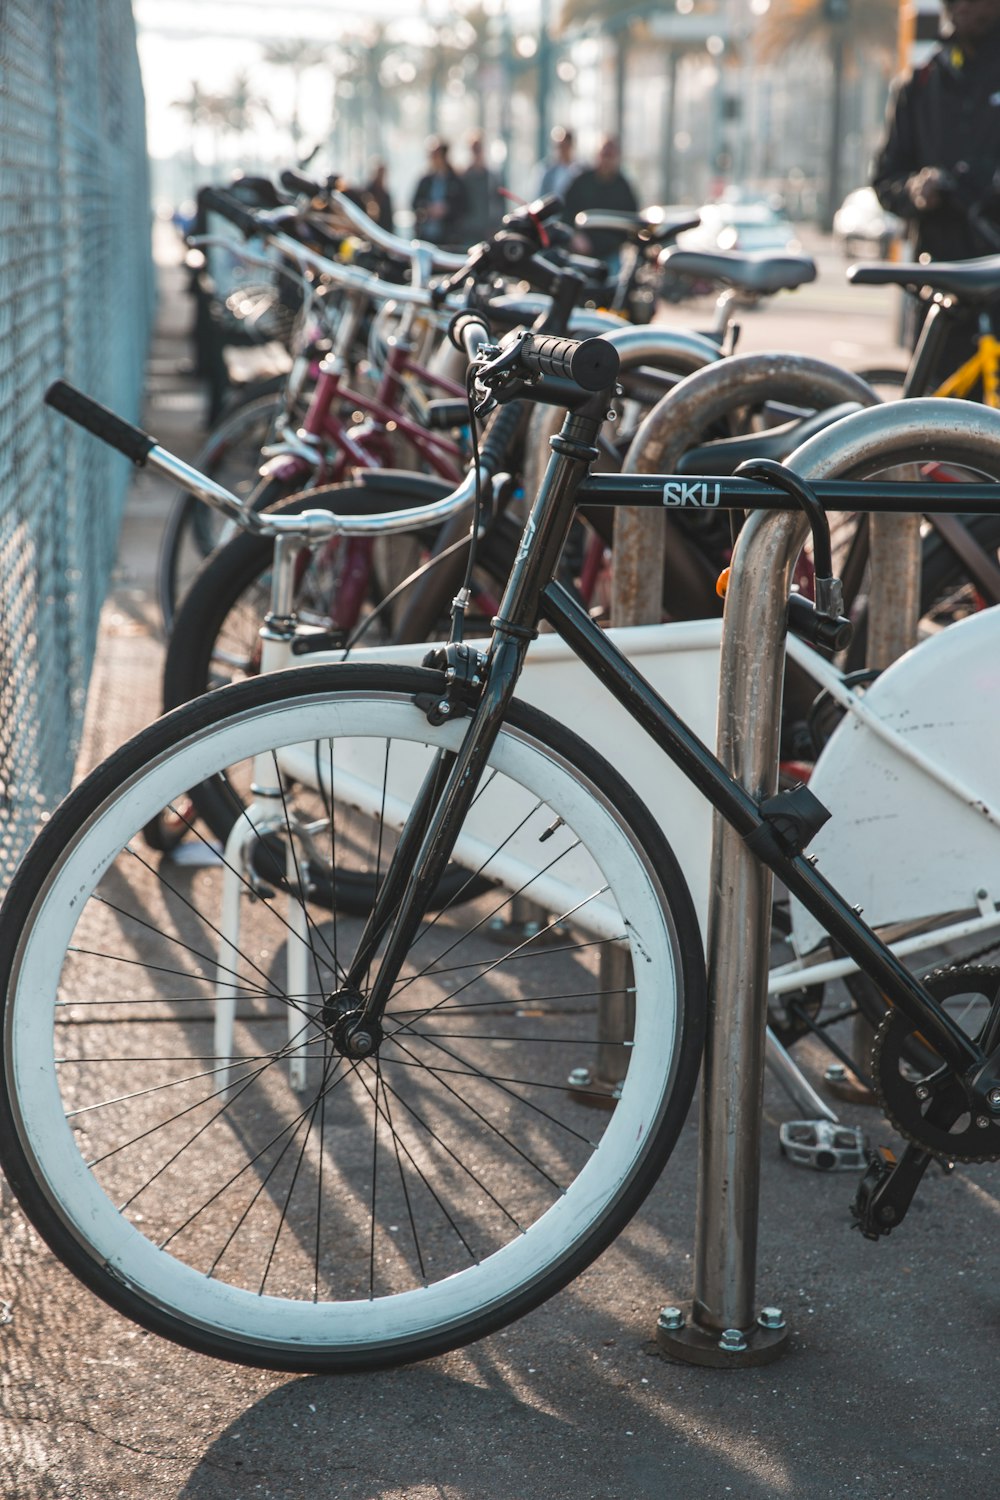 biciclette parcheggiate vicino alla recinzione metallica grigia